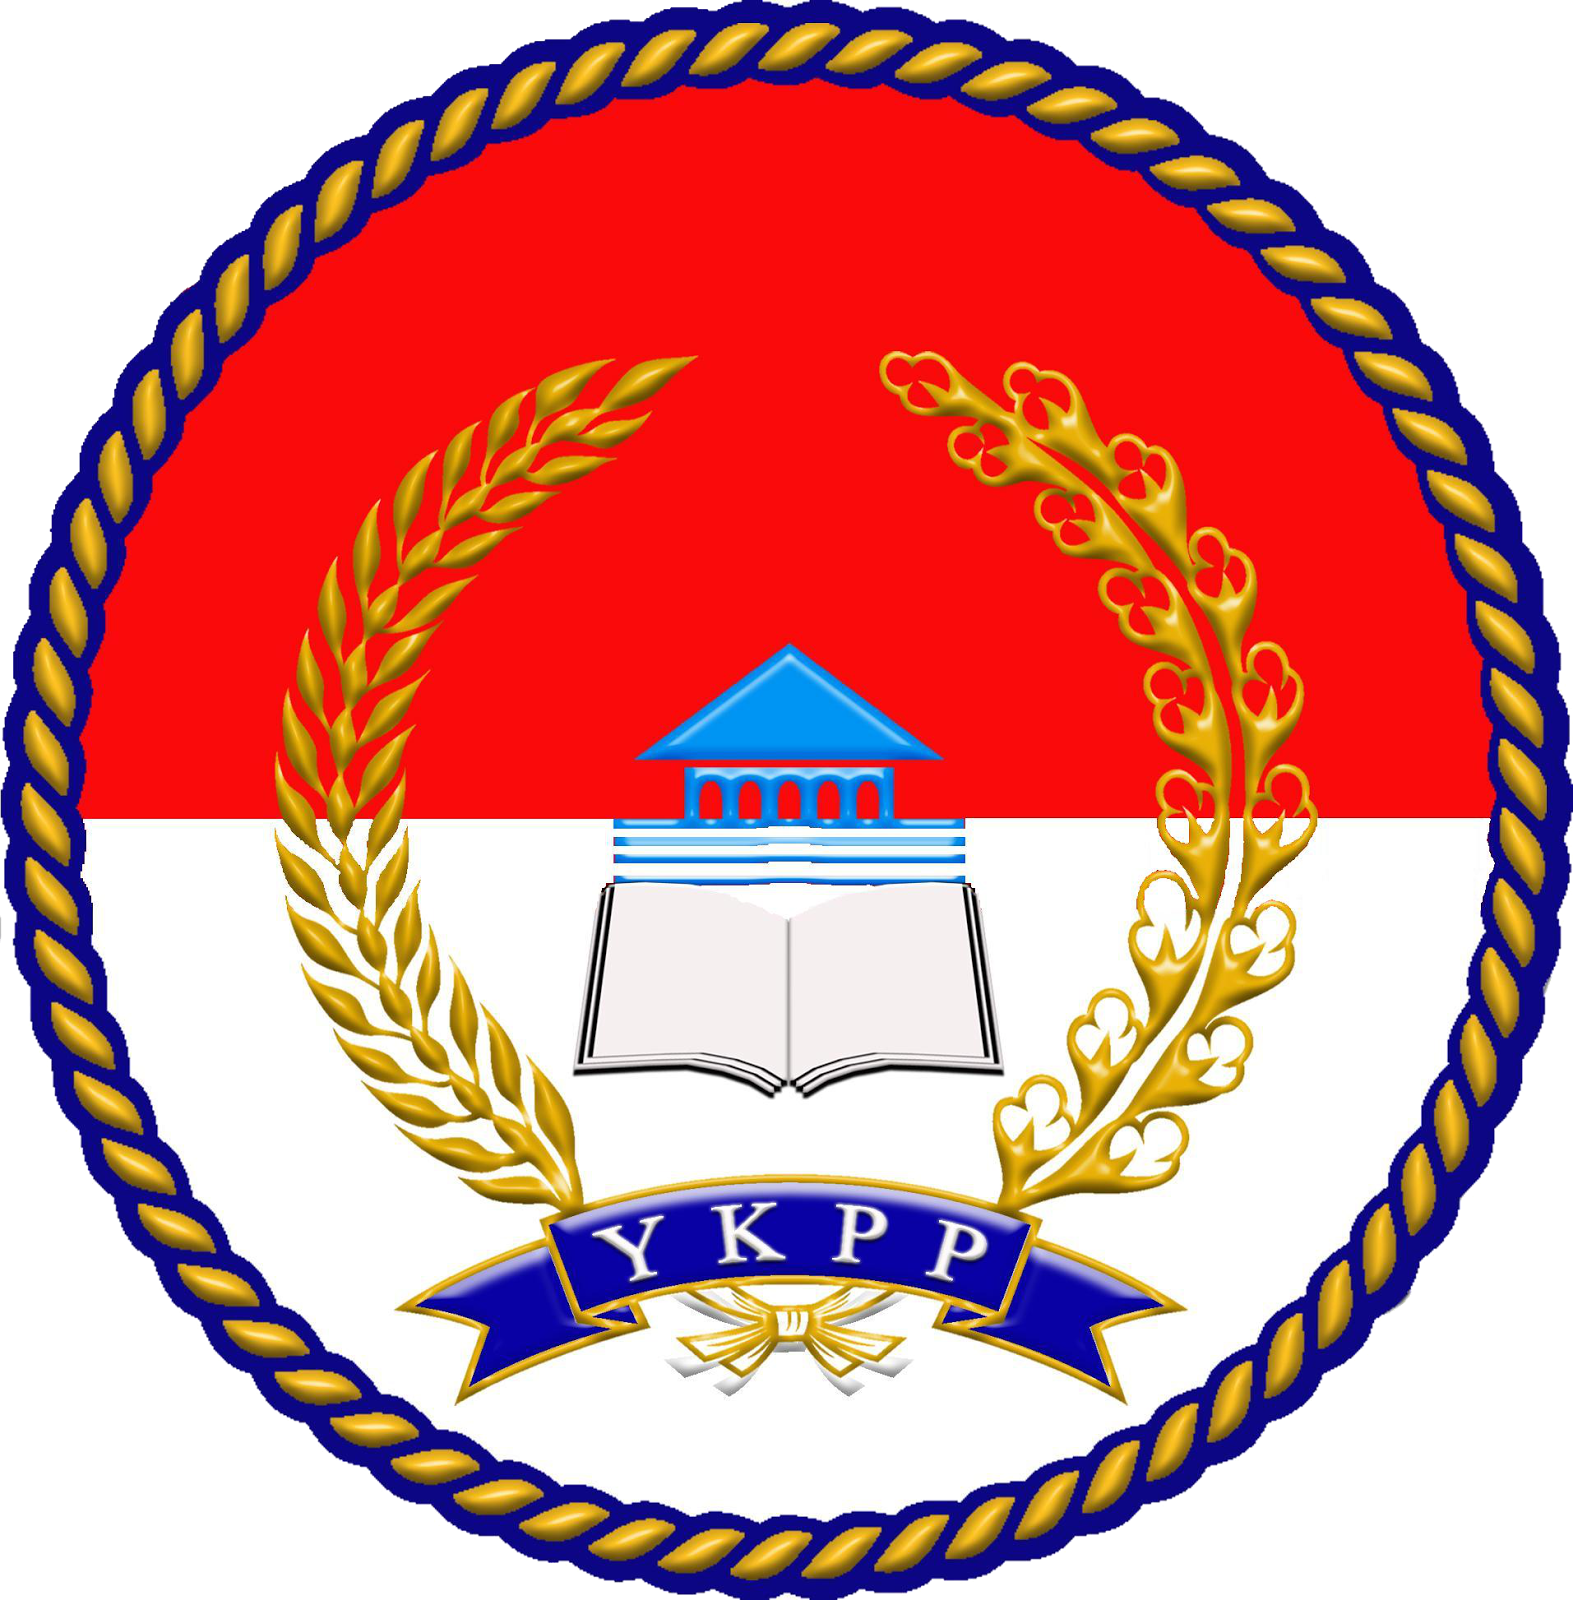 .: Logo / Lambang YKPP